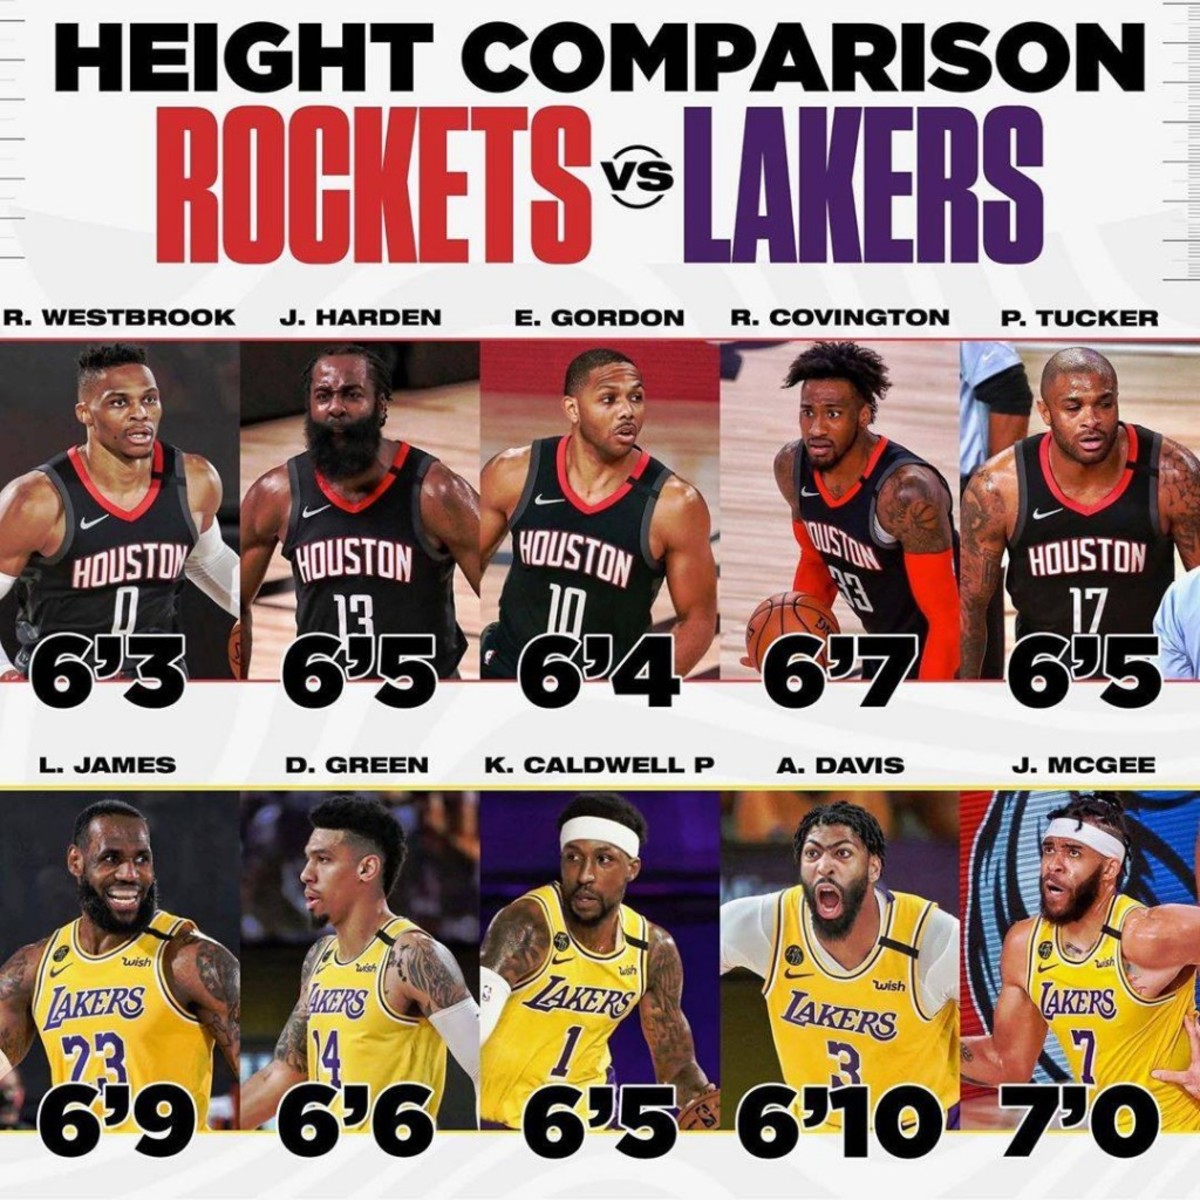 Is LeBron James really 6'9? : r/Basketball